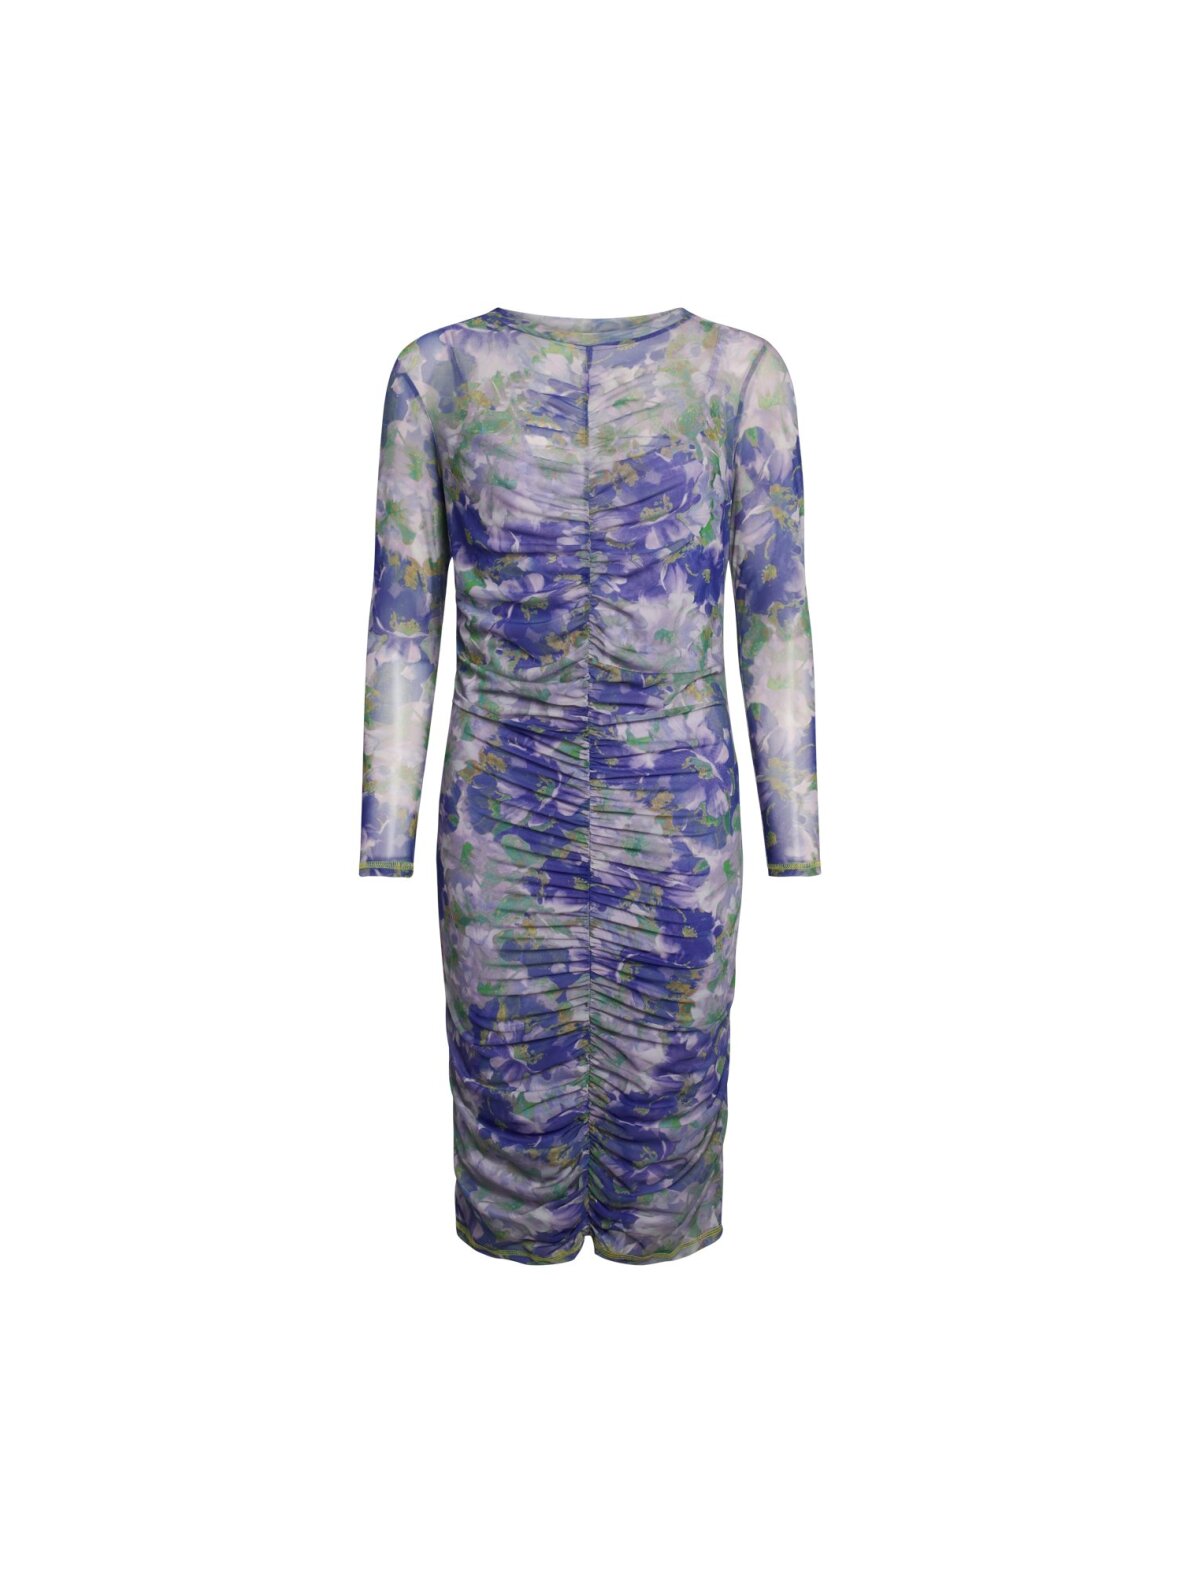 Tegnsætning jord vindruer Enula9 - Nyheder - Mads Nørgaard - Jersey mesh dimma kjole, multi blue